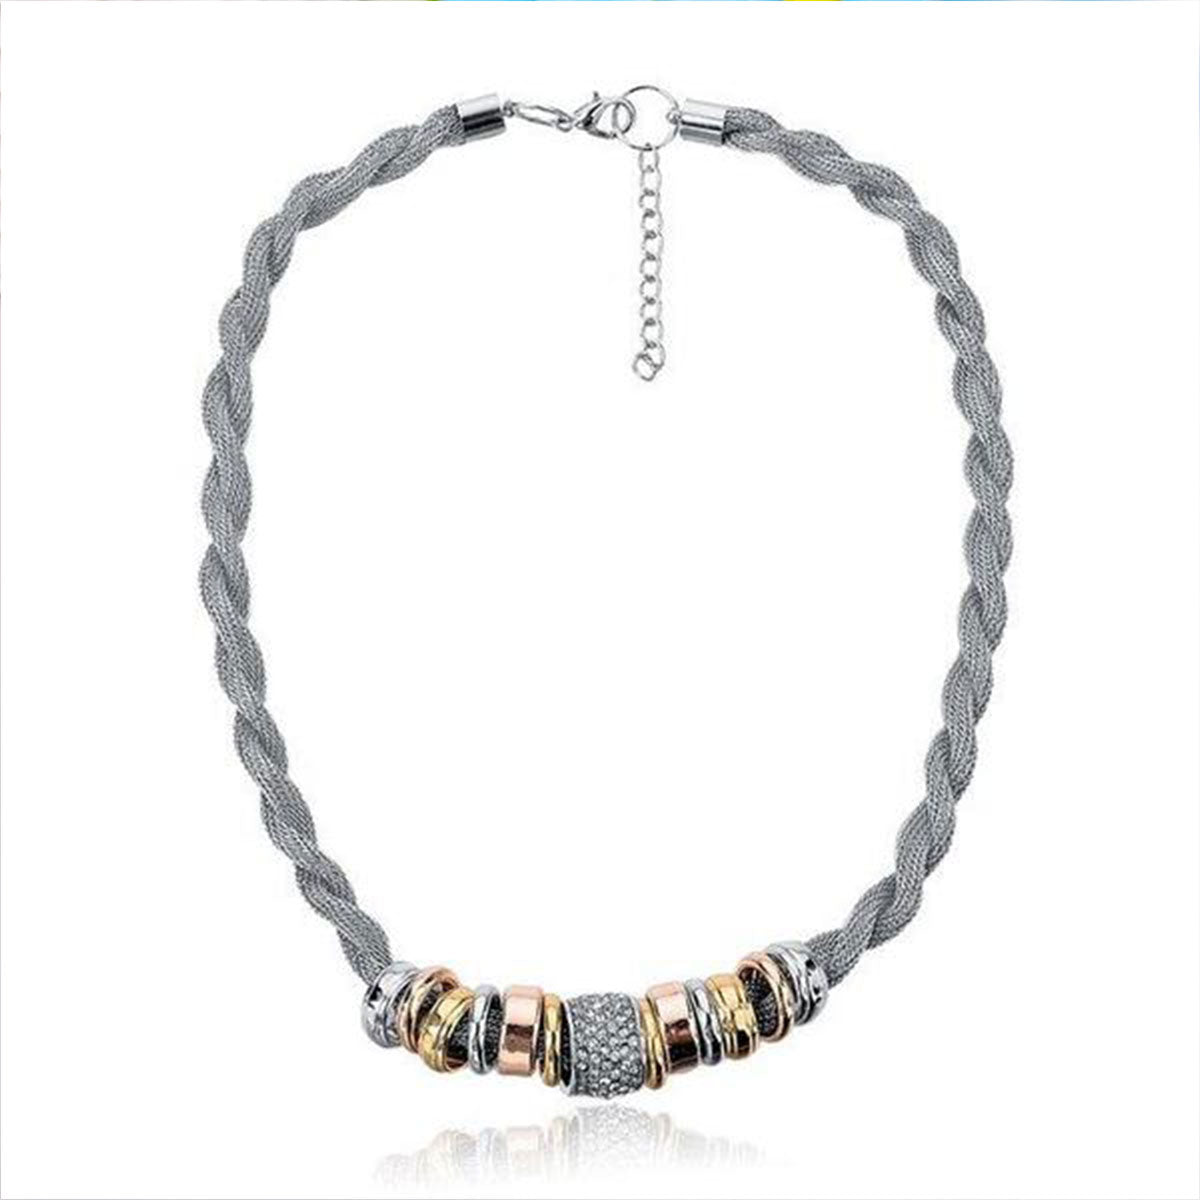 Entwined Silver Metal Bracelet Necklace Bundle Offer